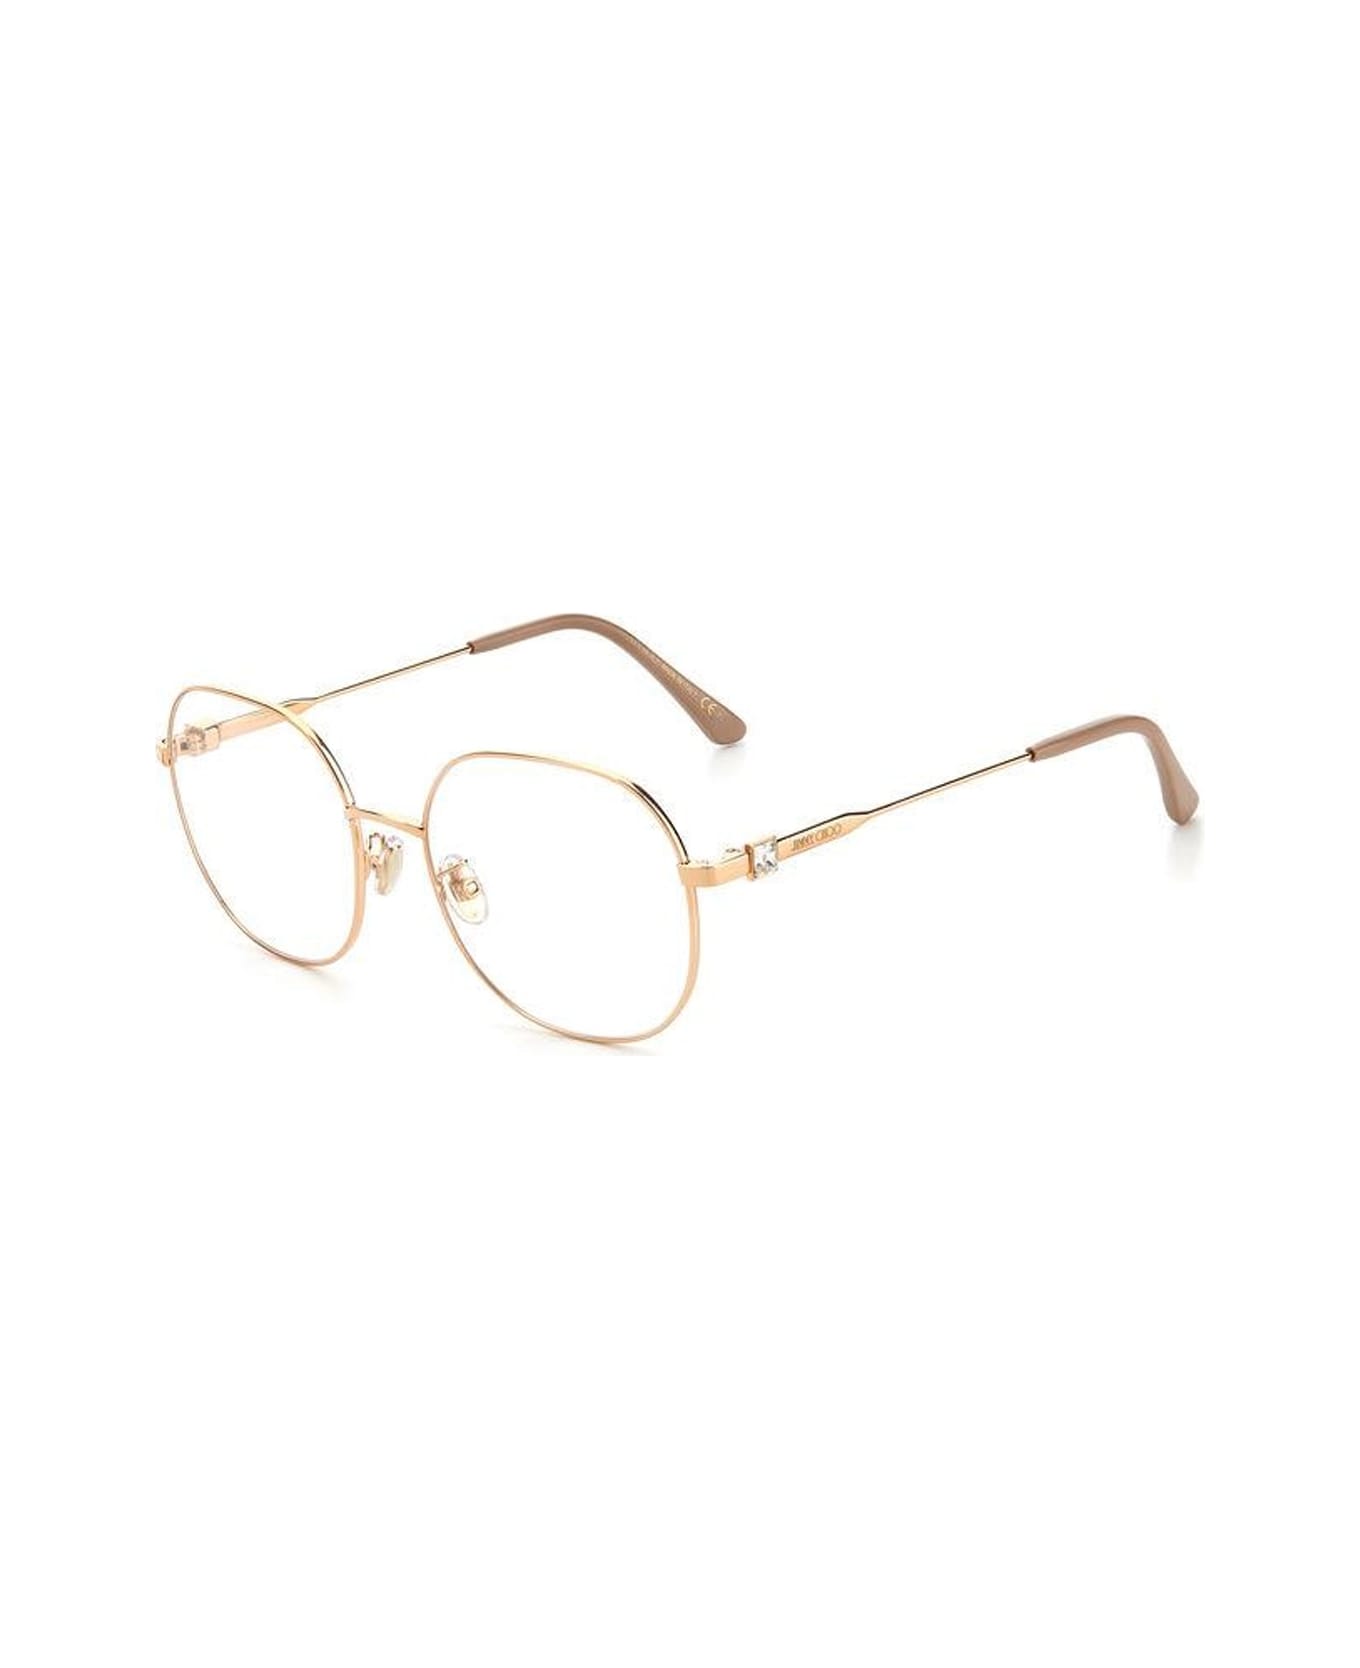 Textiles & Linens Jc305/g Glasses - Oro